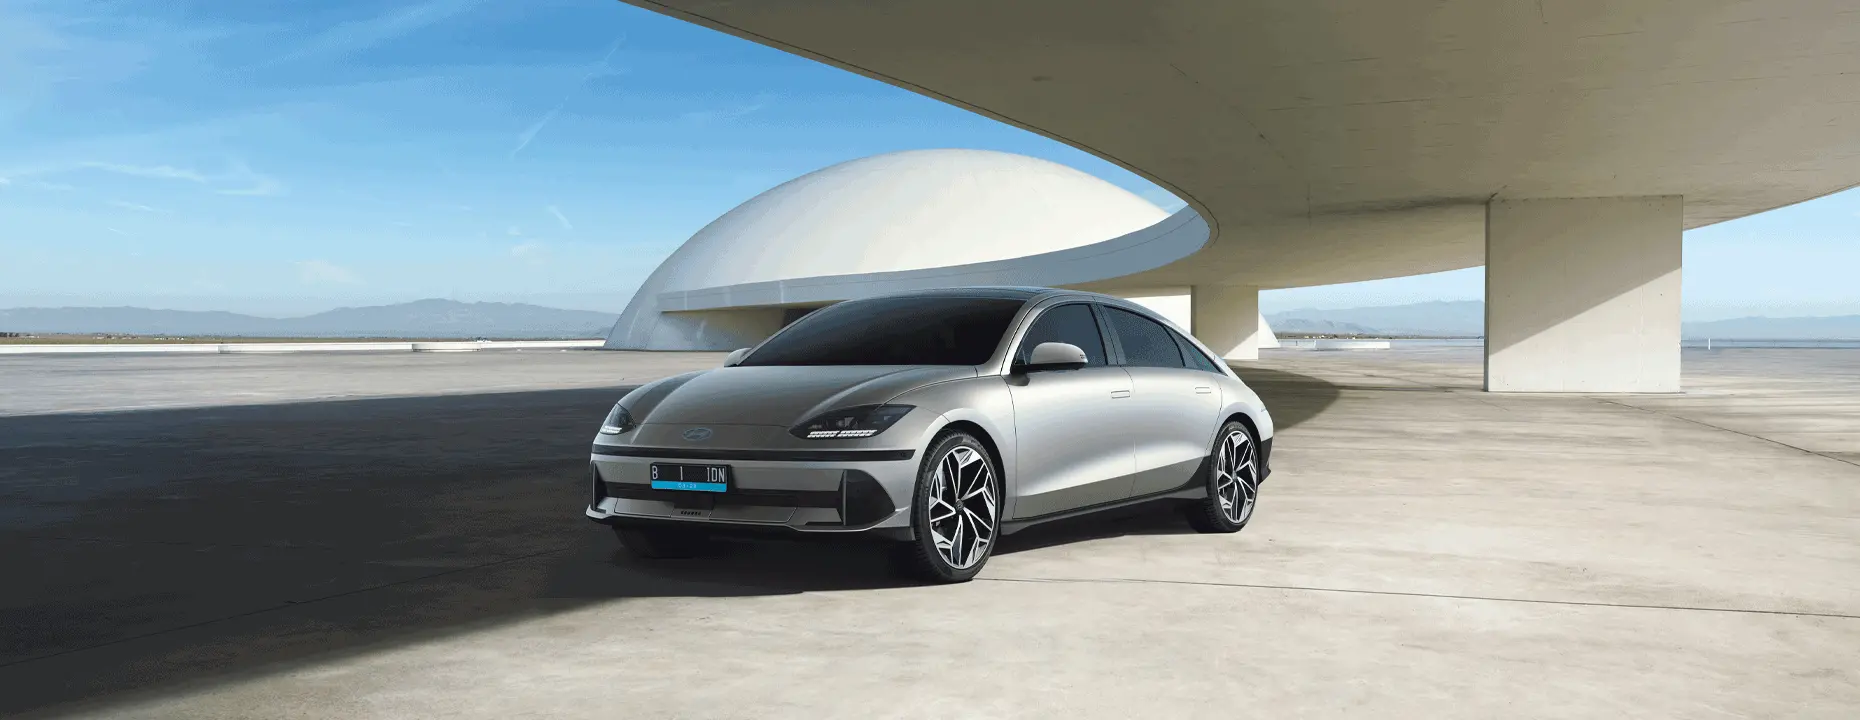 Kemunculan Hyundai Ioniq 6 2023 dalam Ulasan Singkat yang Mengesankan. Temukan spesifikasi, performa, dan keunikan dari mobil listrik ini. Jangan lewatkan!